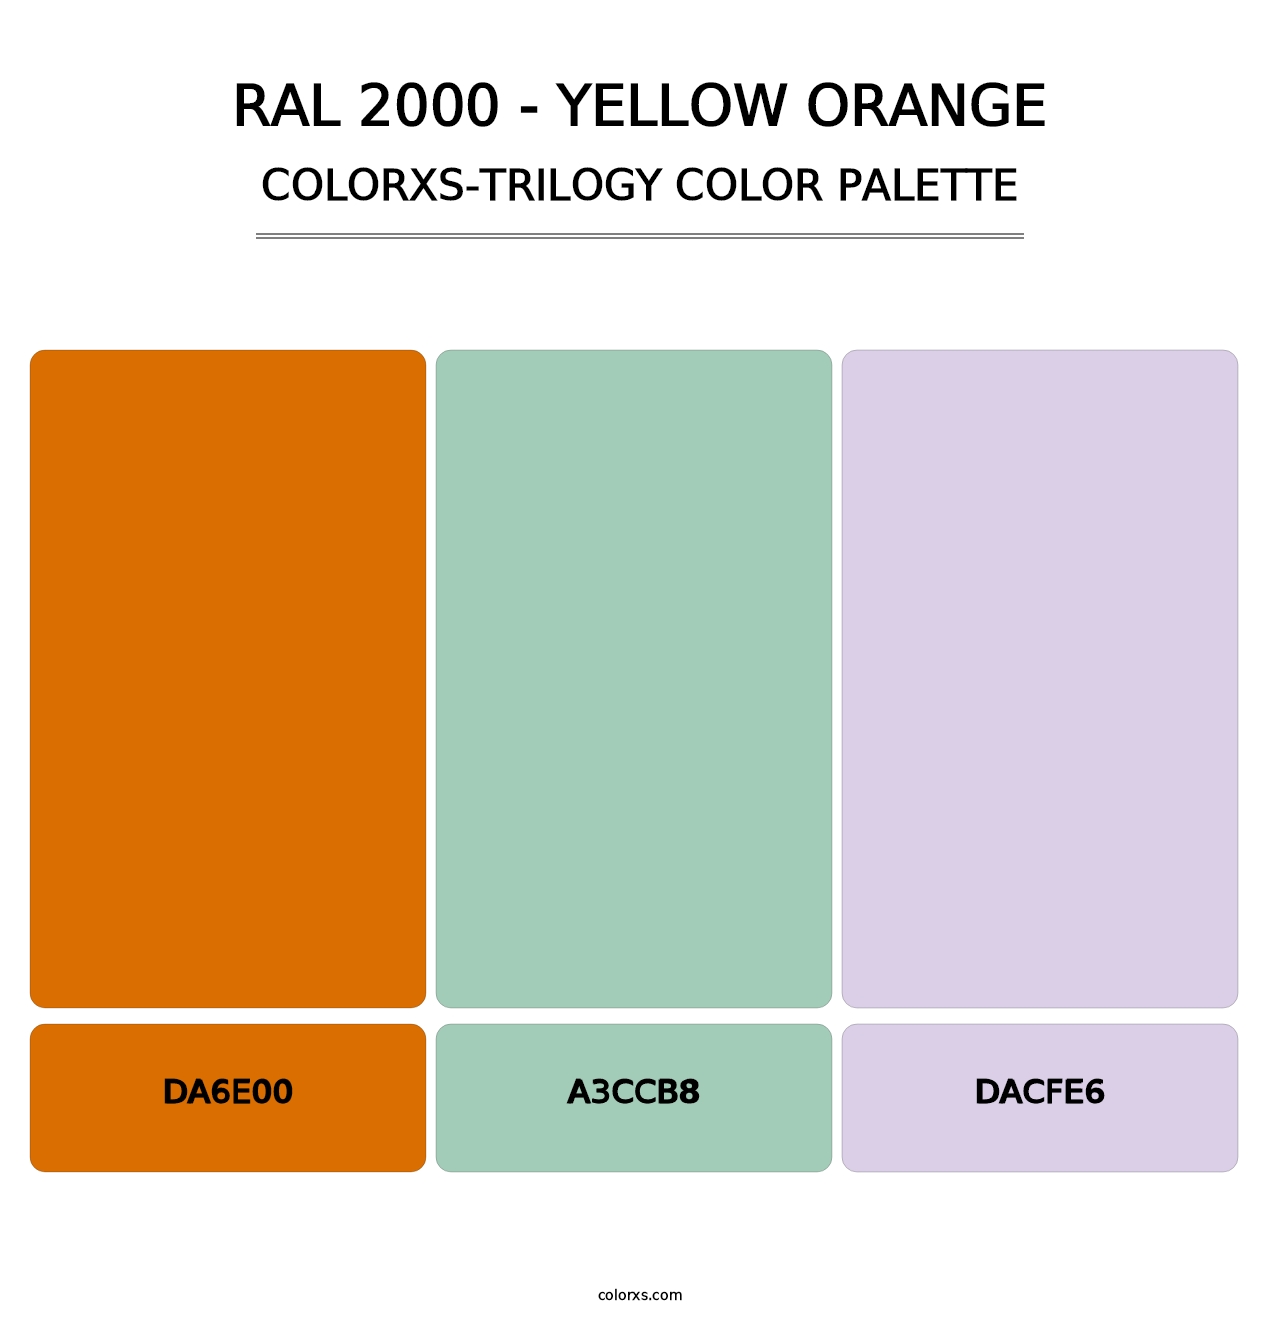 RAL 2000 - Yellow Orange - Colorxs Trilogy Palette